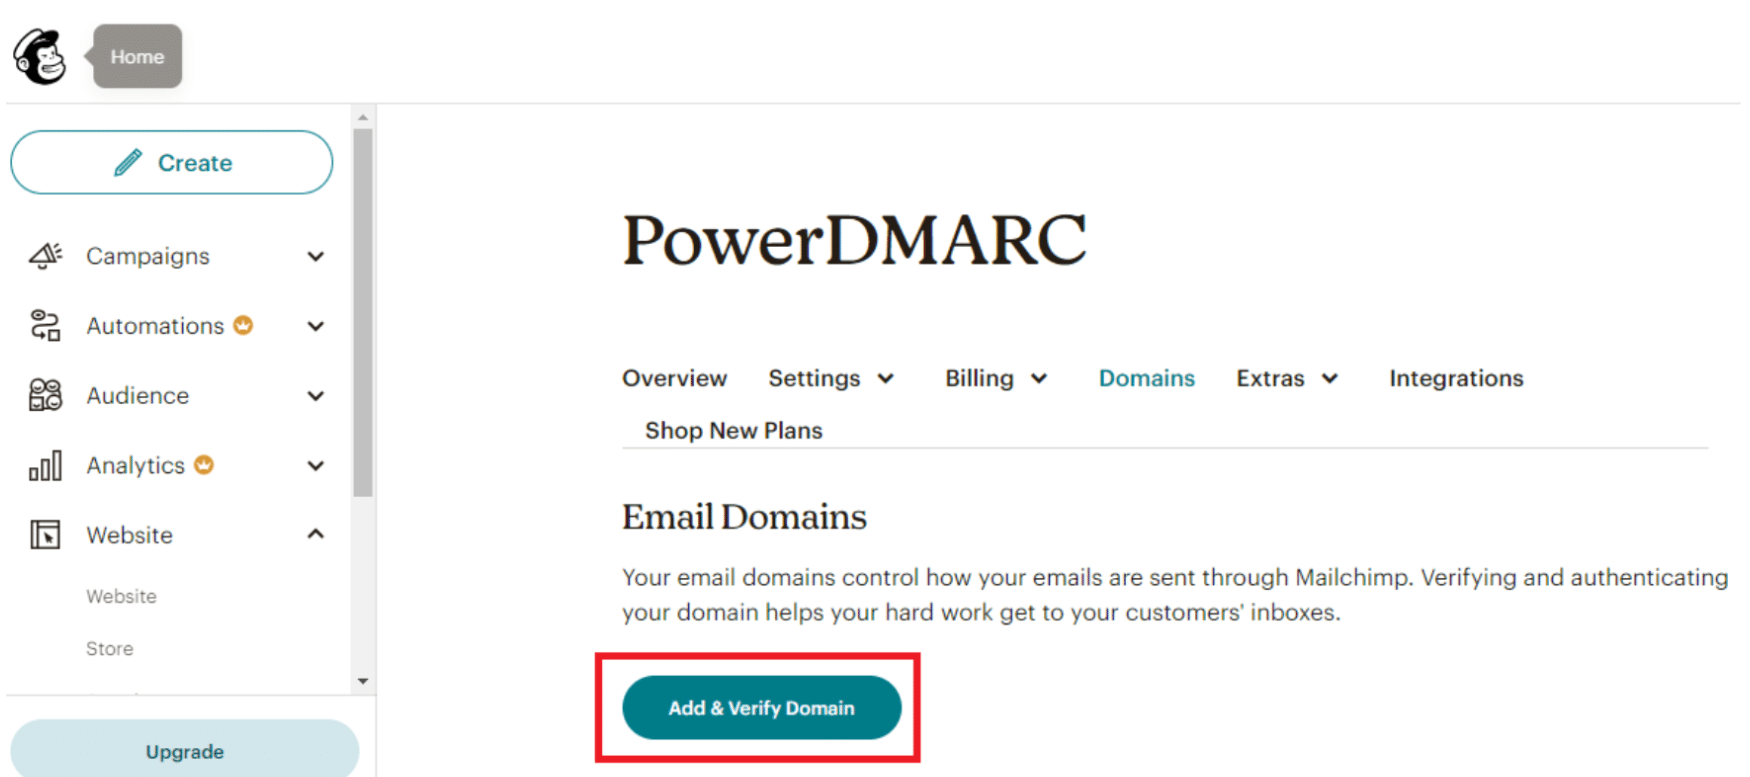 dmarc для mailchimp